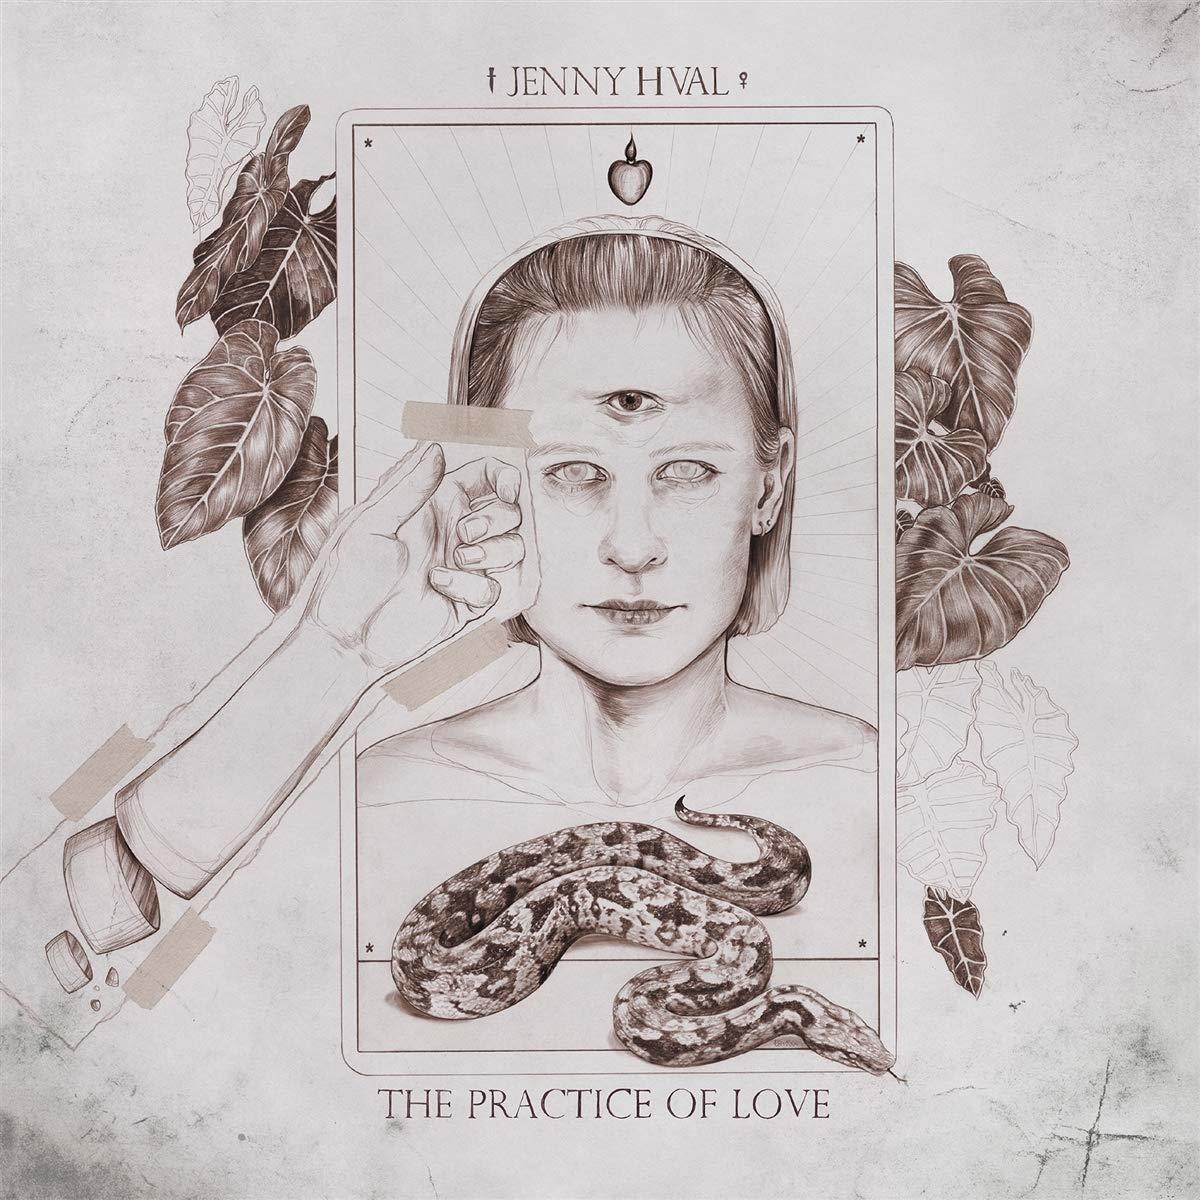 - The (CD) Love Hval Jenny - Practice Of